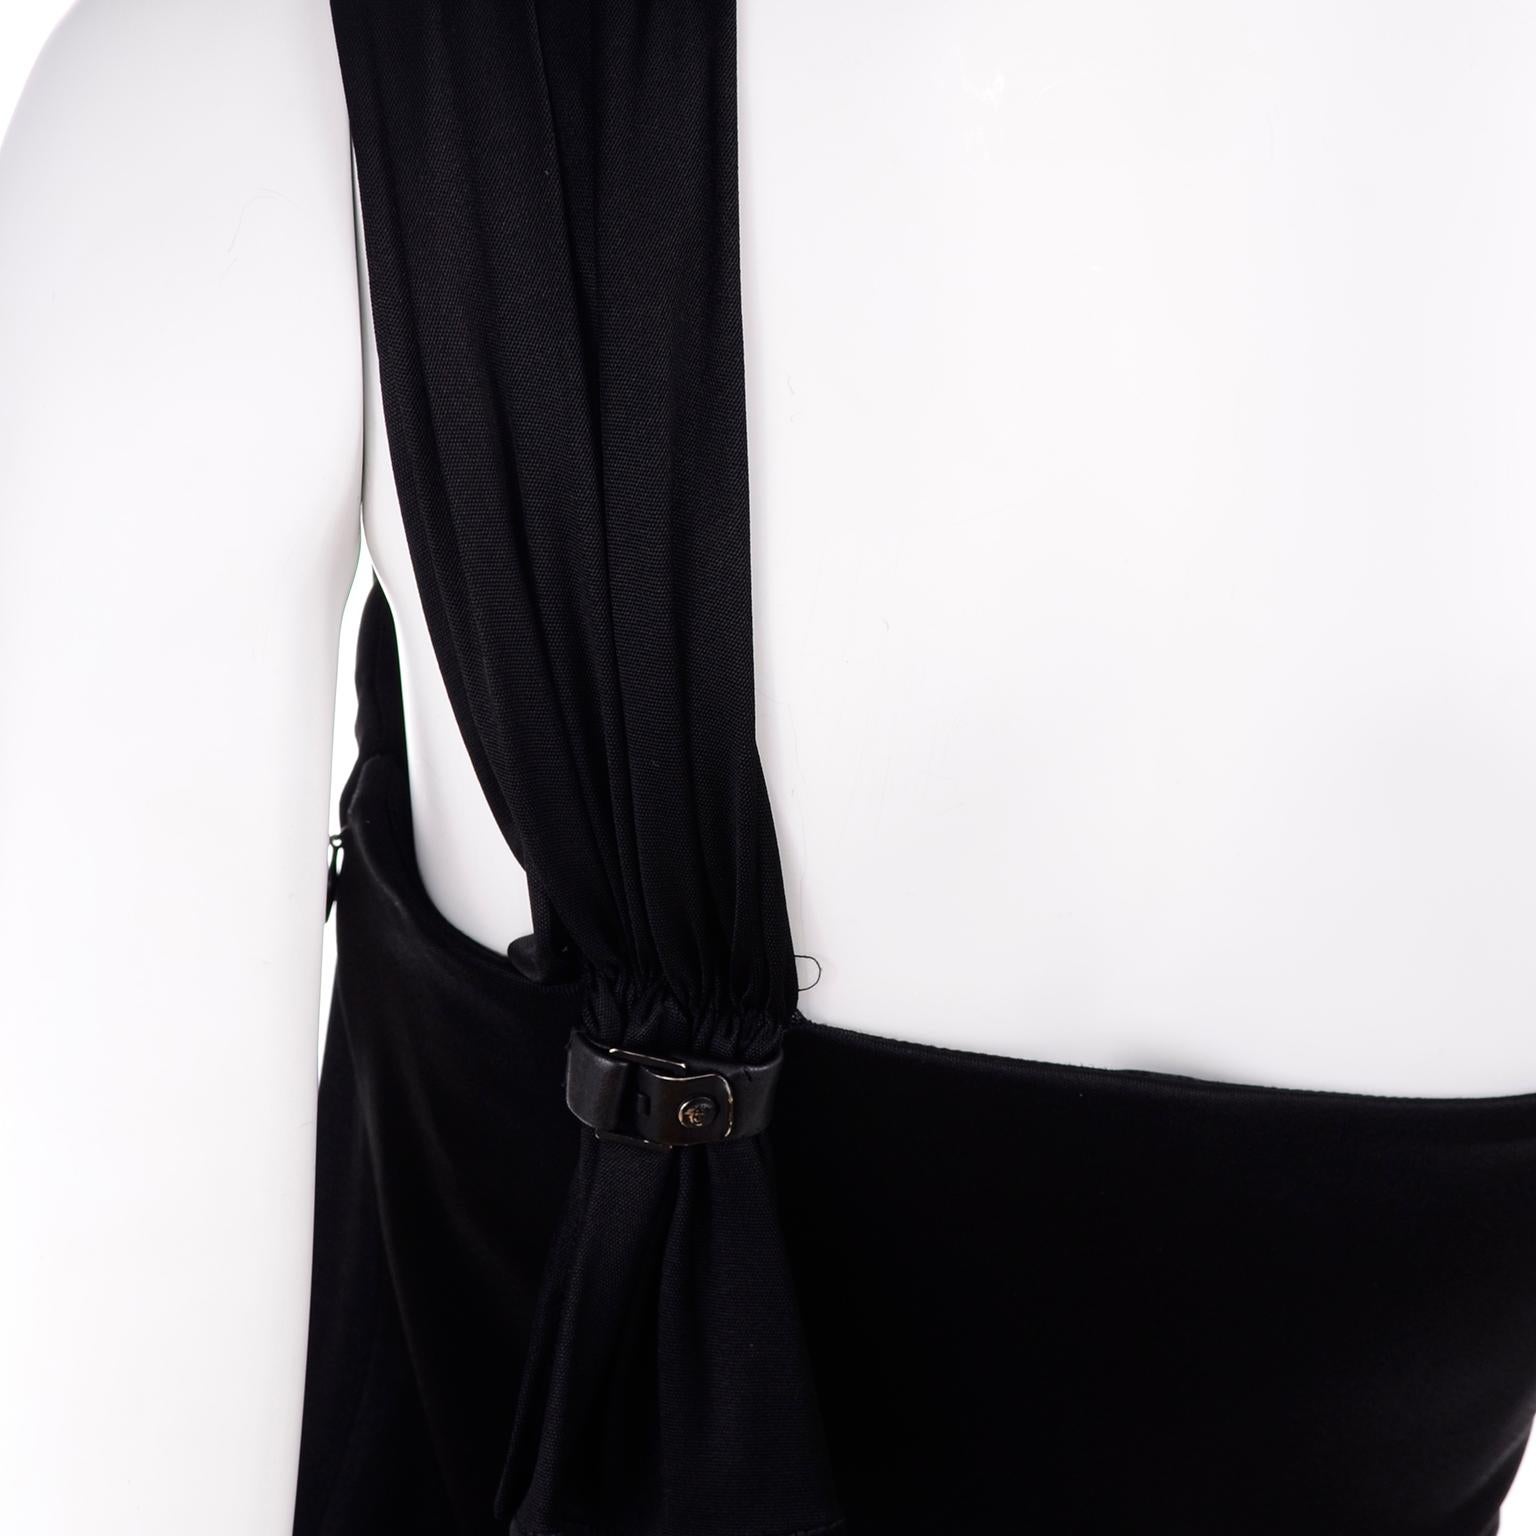 Gianni Versace Couture 1998 Vintage Black One Shoulder Dress Medusa Buckle For Sale 2